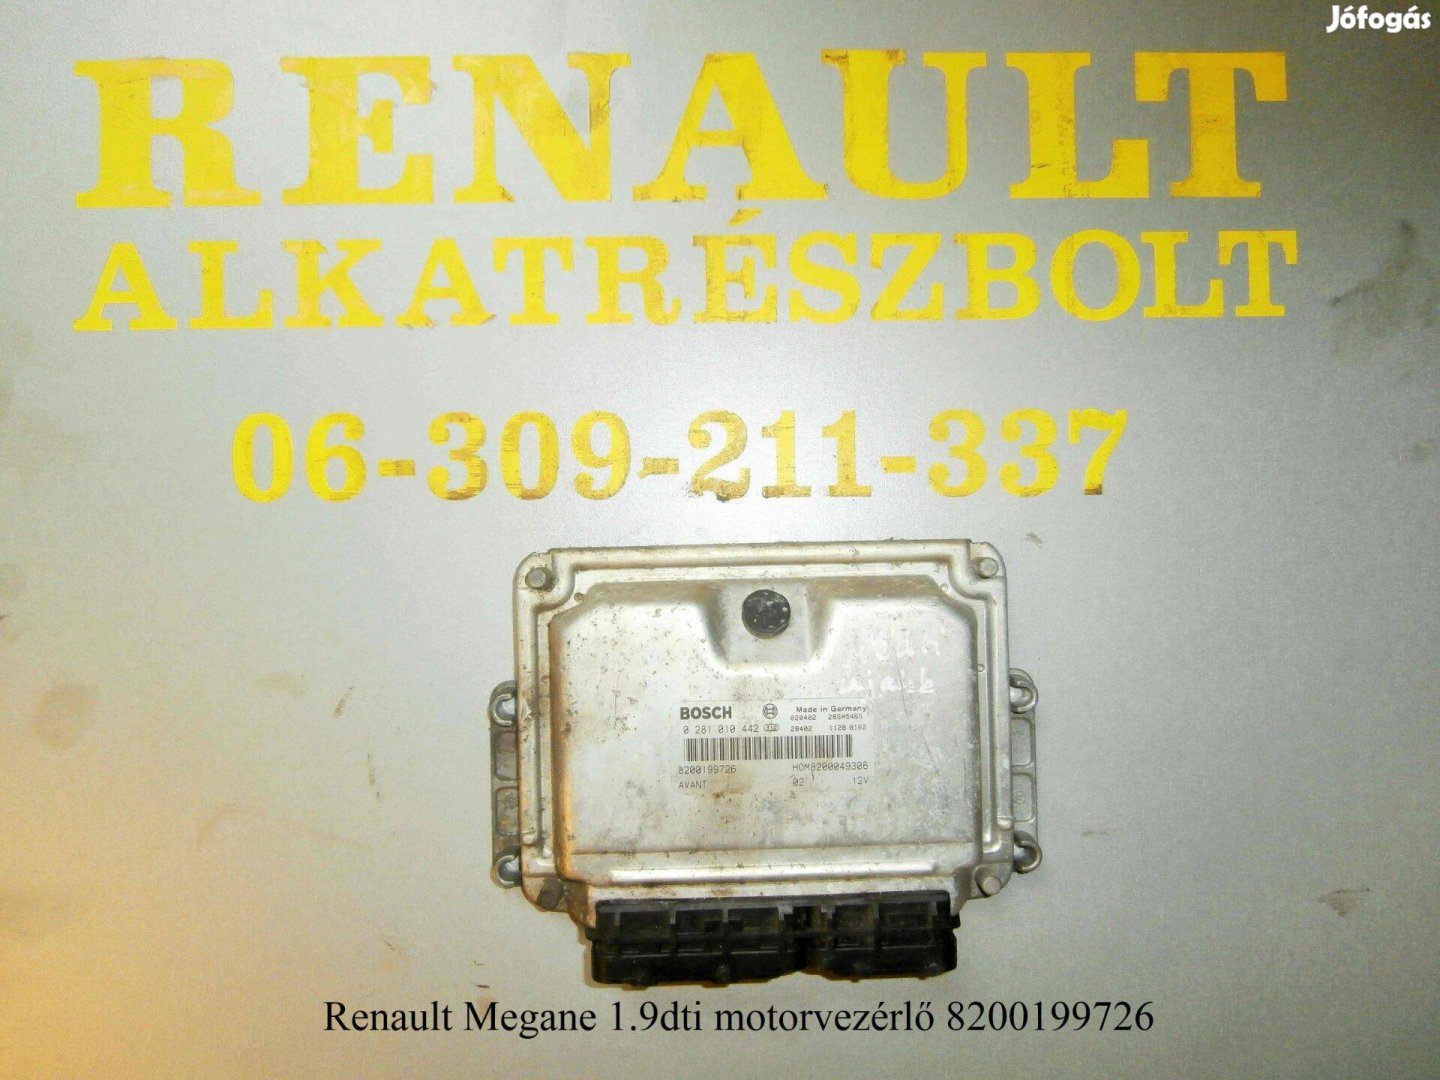 Renault Megane 1.9dti motorvezérlő 8200199726